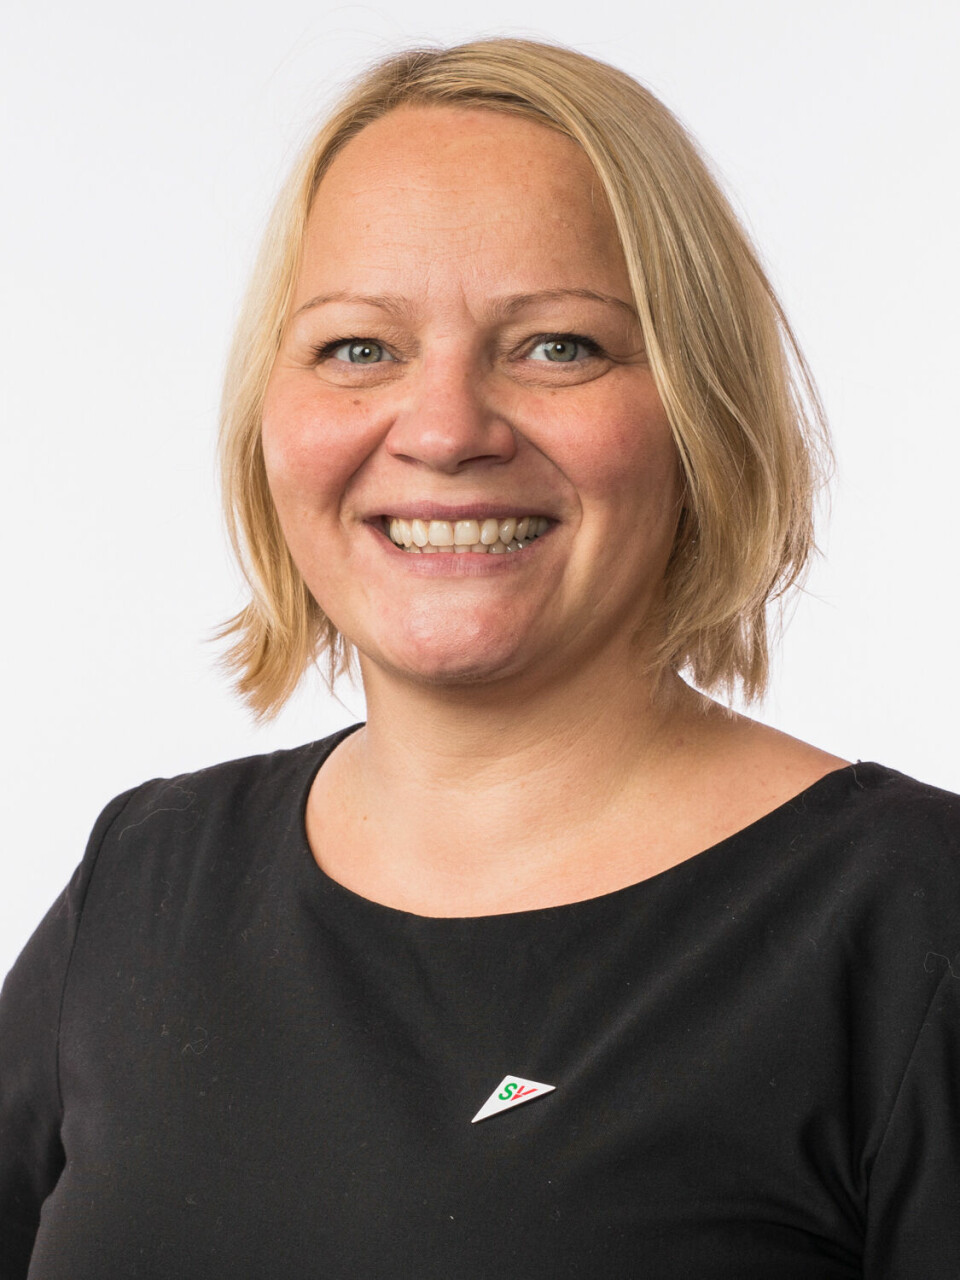 GÅR MOT: Stortingsrepresentant for SV, Mona Fagerås, fortel at dei stiller seg mot forslaget til regjeringa. PRESSEFOTO/STORTINGET.